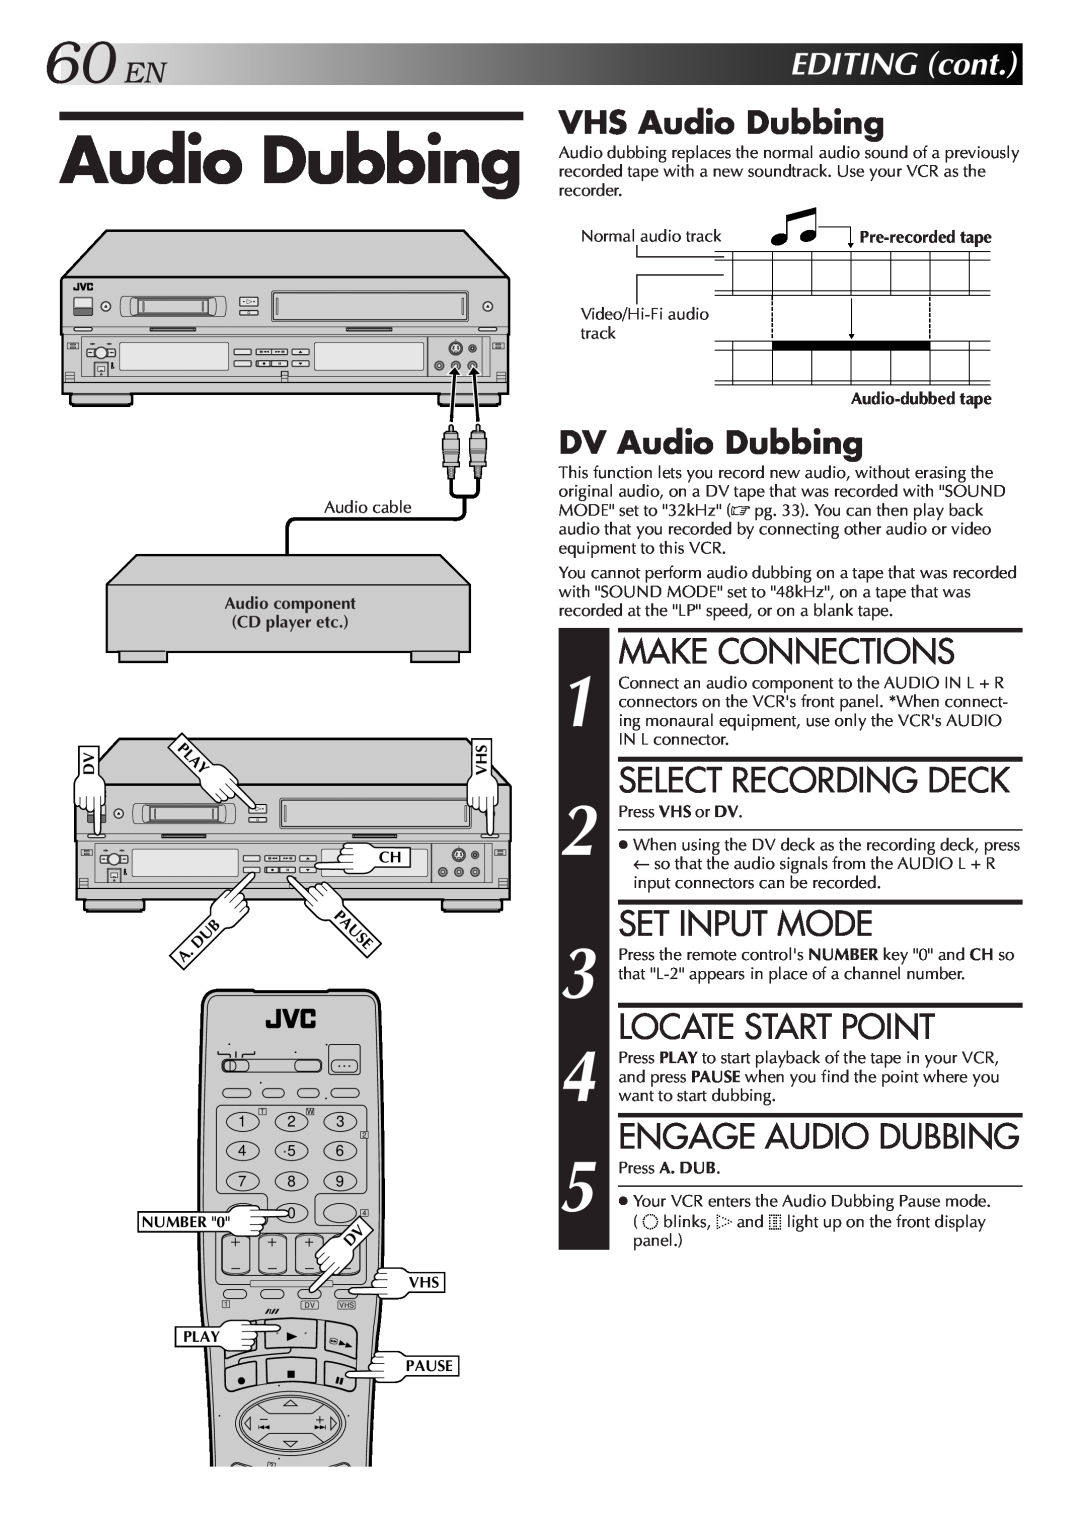 JVC SR-VS10U manual 1 2 3 4 5, 60 EN, Select Recording Deck, Set Input Mode, Engage Audio Dubbing, VHS Audio Dubbing 